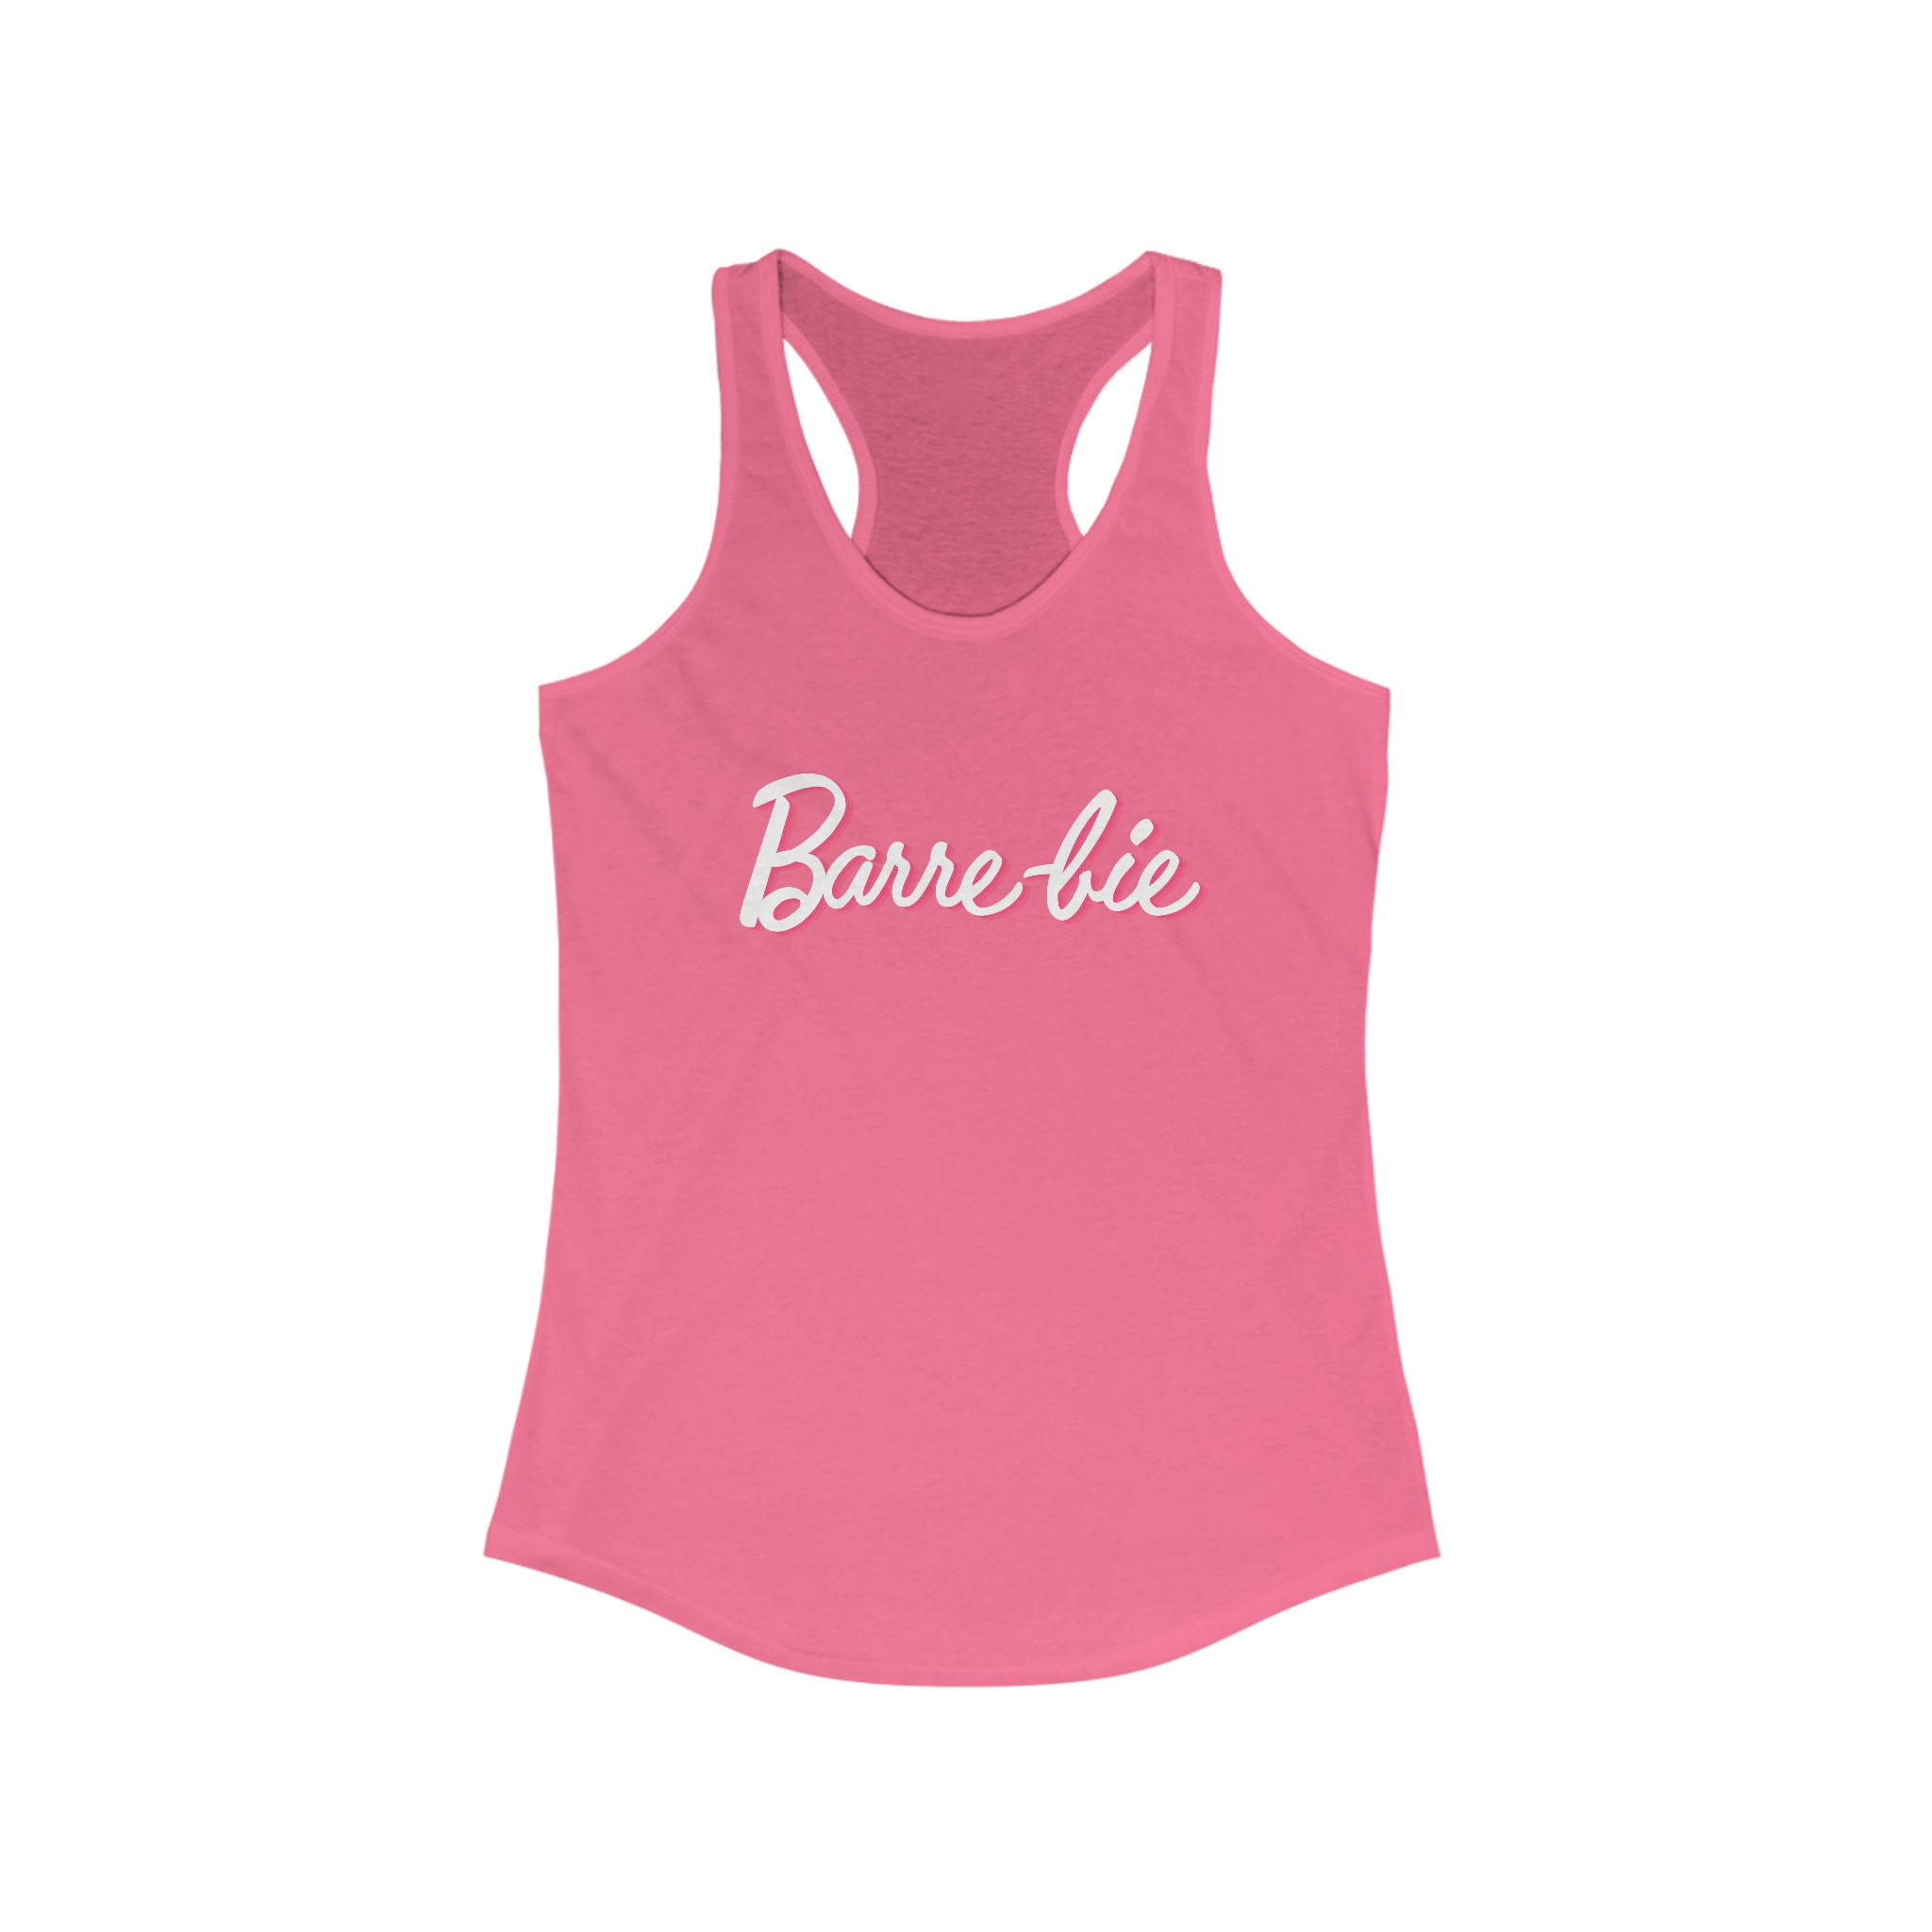 Barre-bie Shirt Barre Shirt Pink Barre Workout Tank Women's Ideal